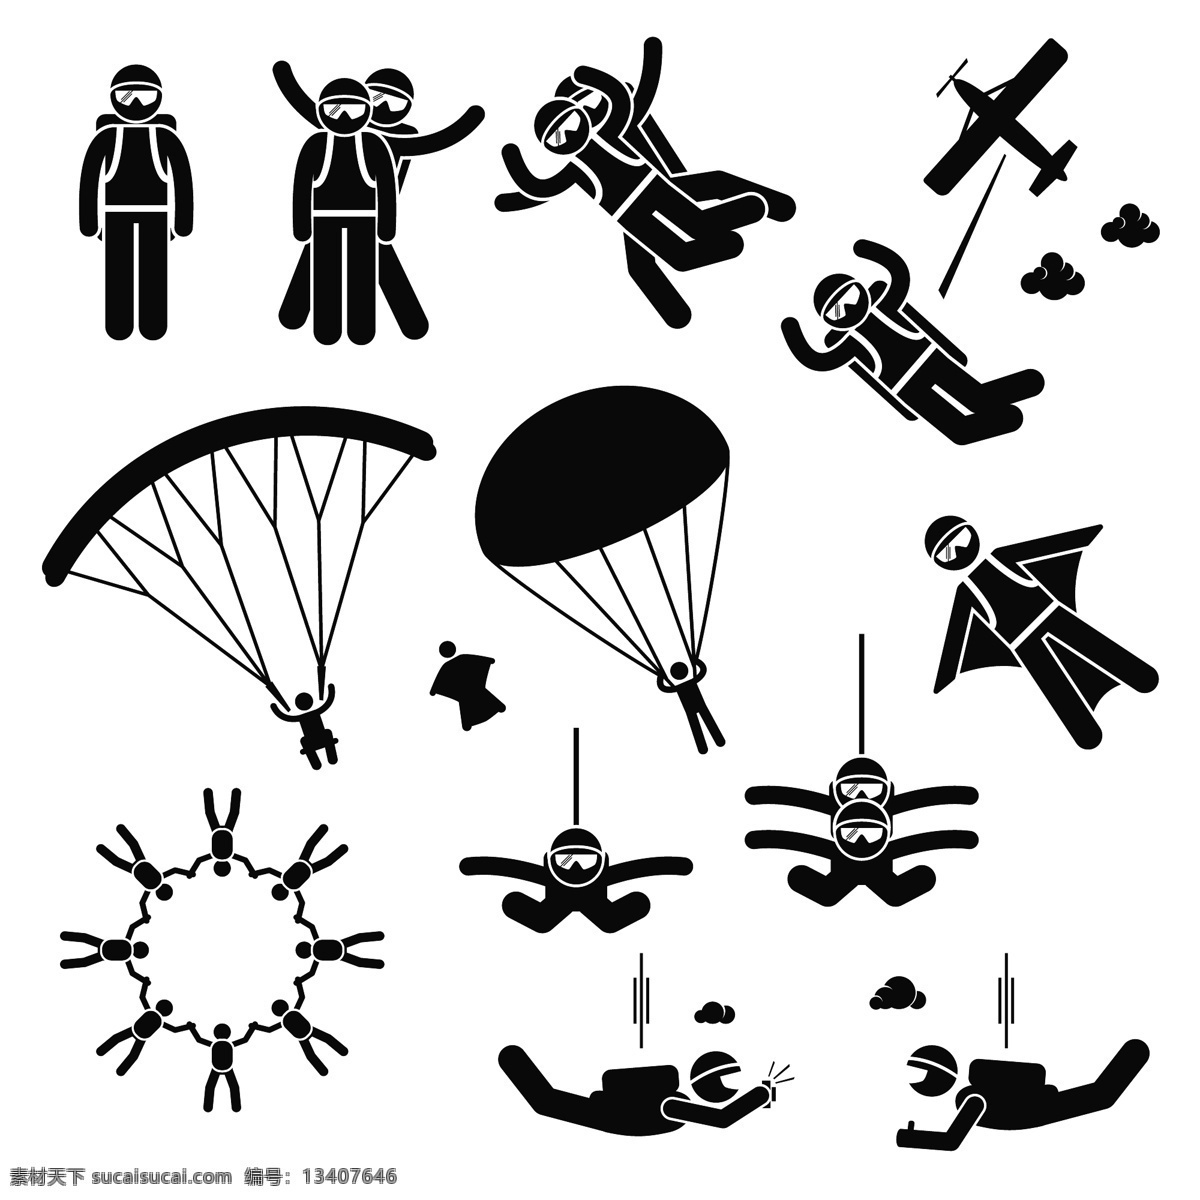 跳伞矢量素材 跳伞 黑色 教练 圆形 降落伞 矢量素材 设计素材